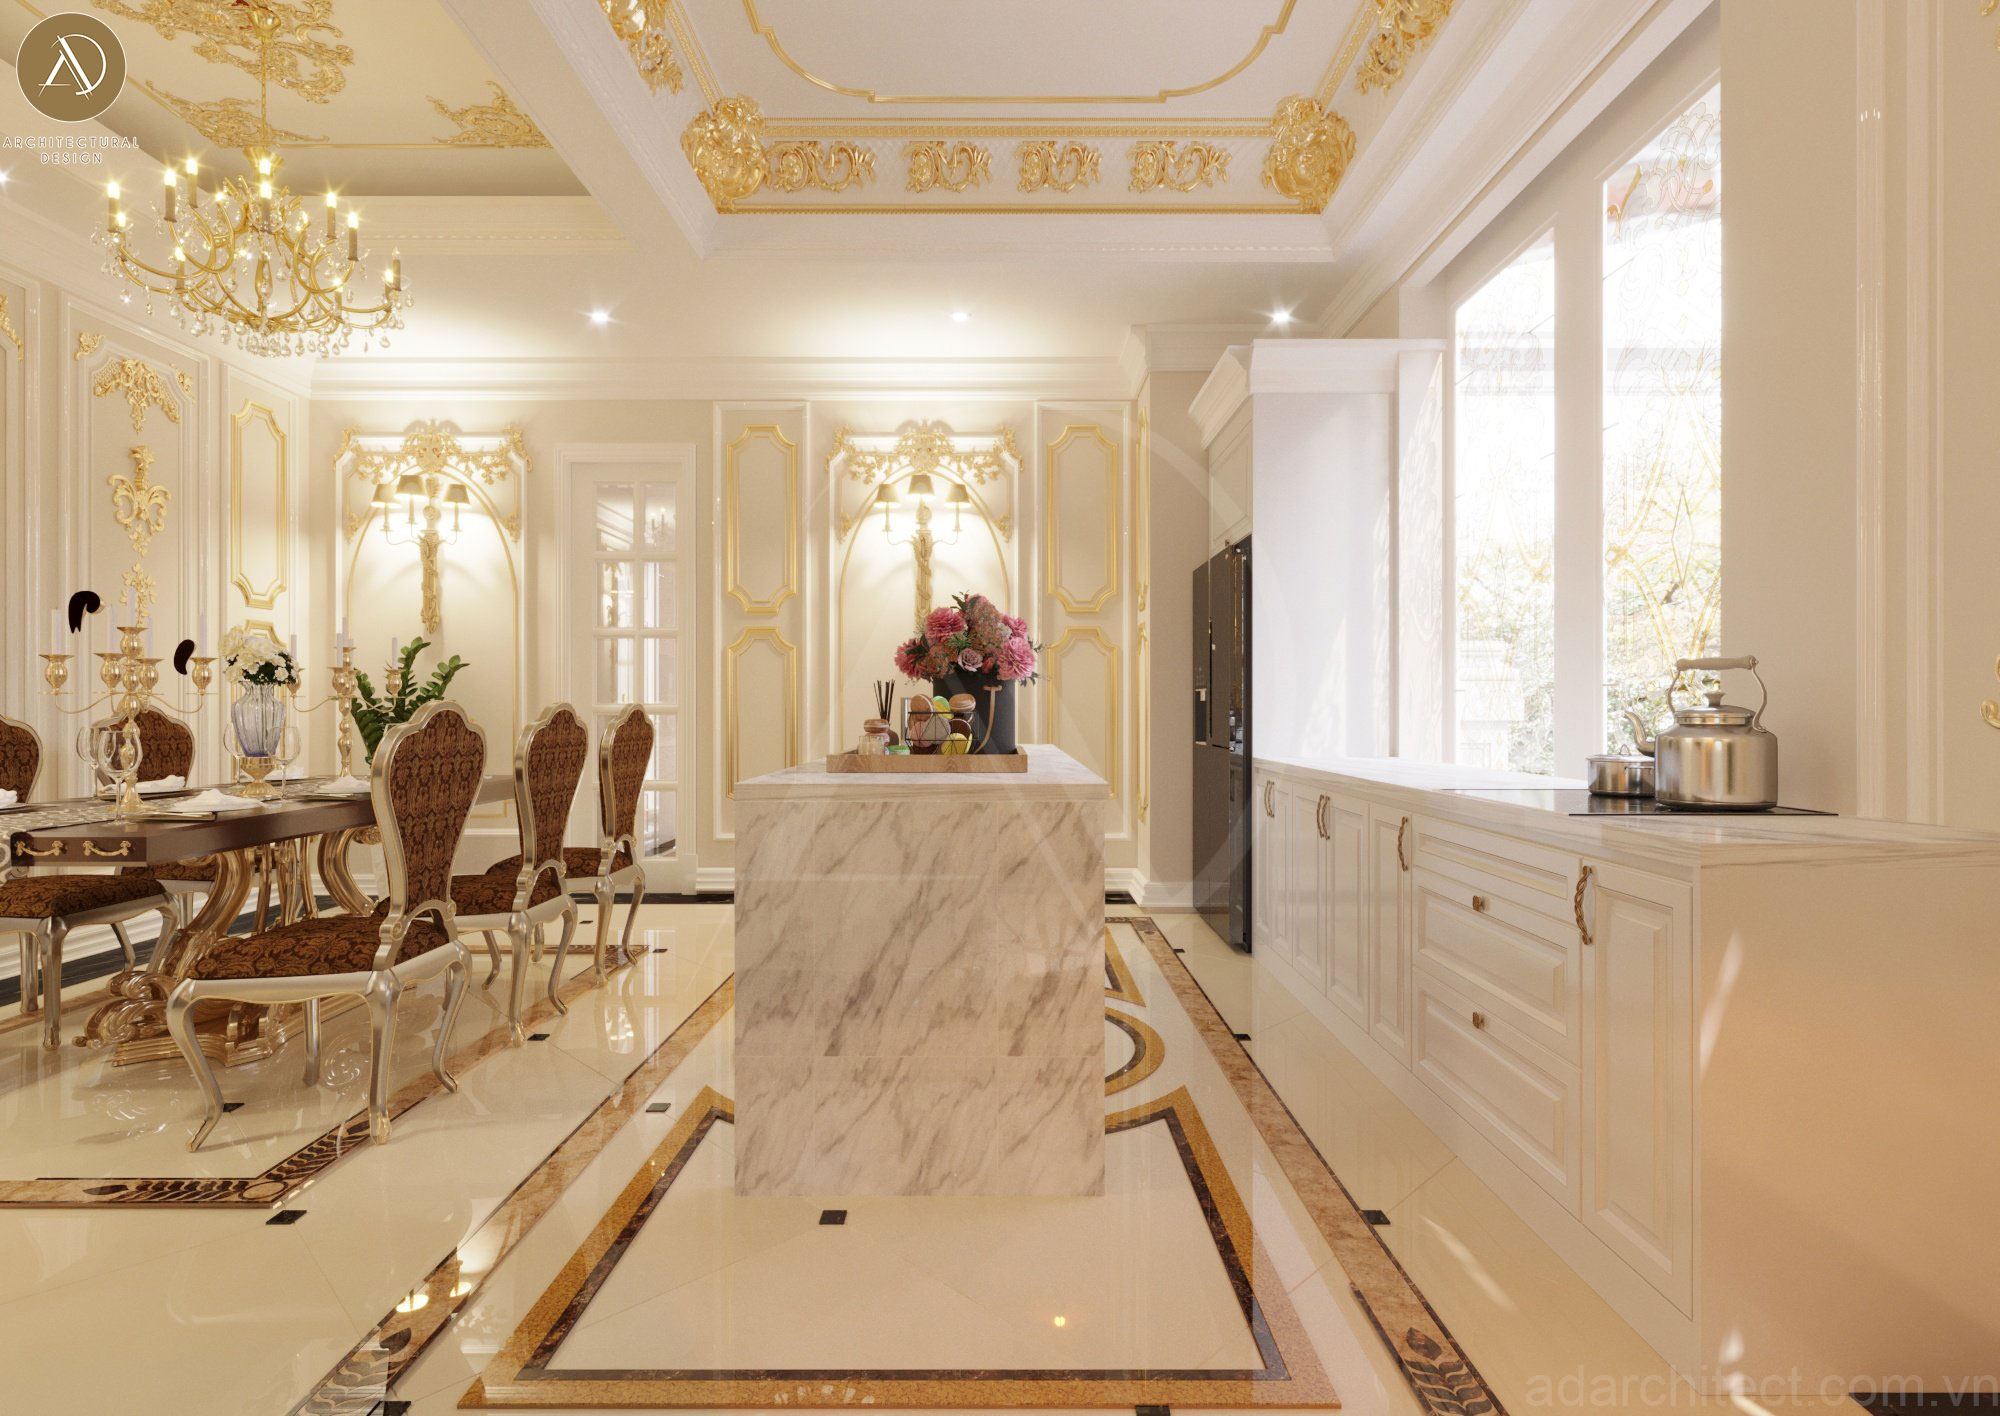 Thiết kế biệt thự cổ điển: không gian bếp với đầy đủ nội thất tiện nghi, cao cấp